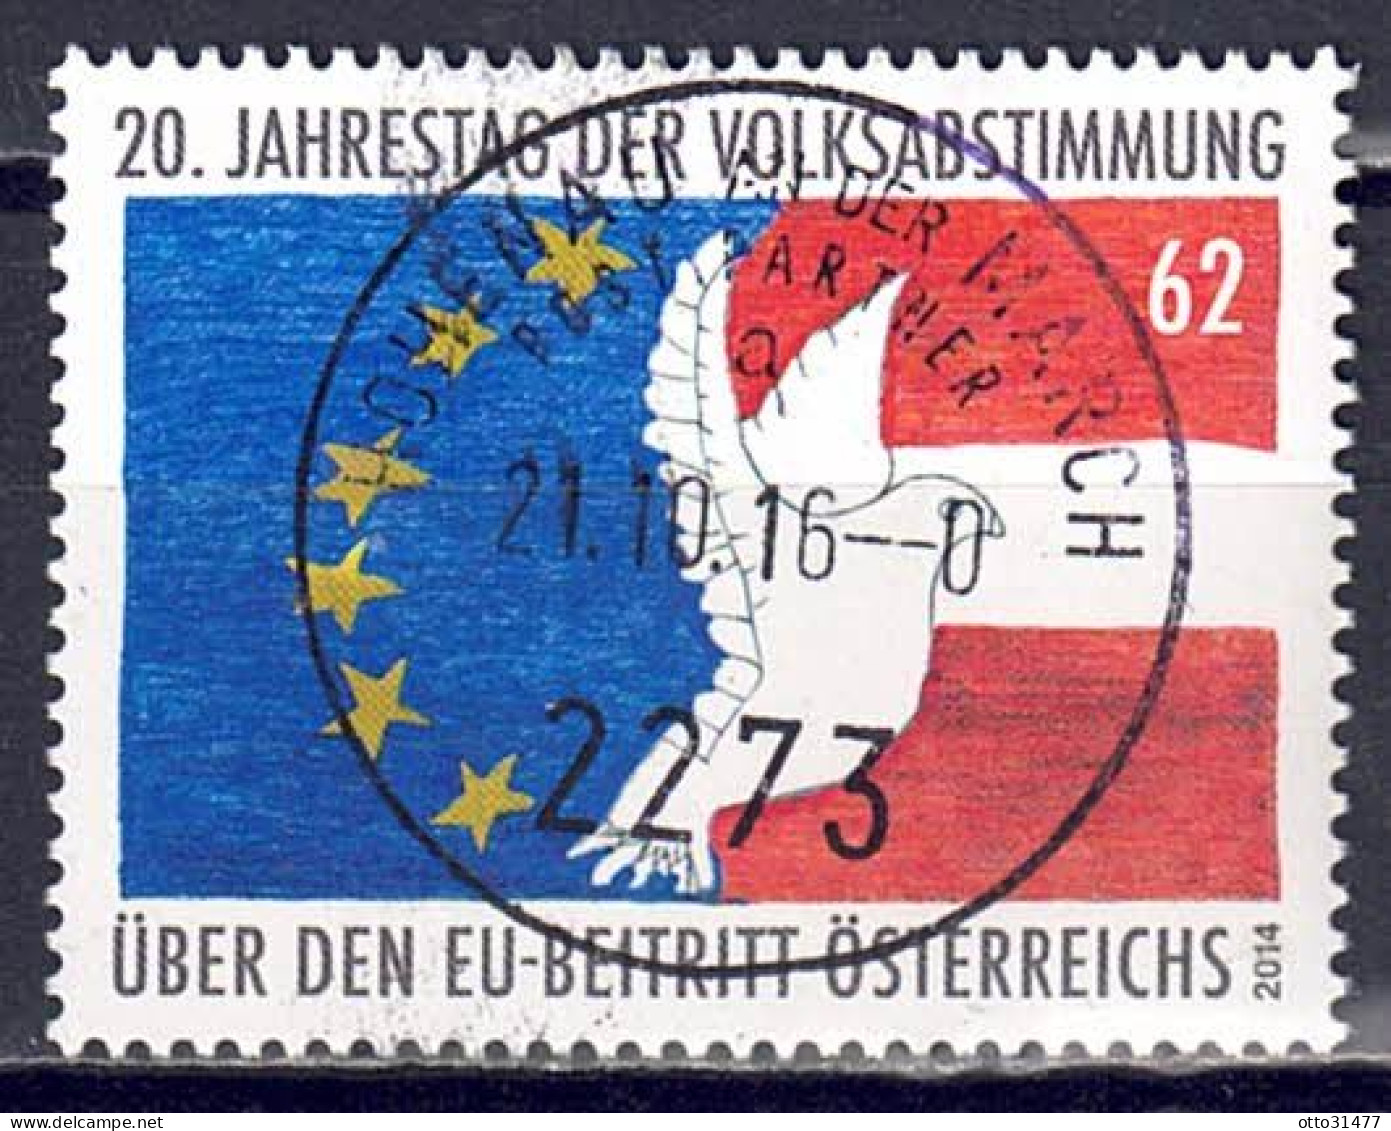 Österreich 2014 - EU-Beitritt, MiNr. 3145, Gestempelt / Used - Gebraucht